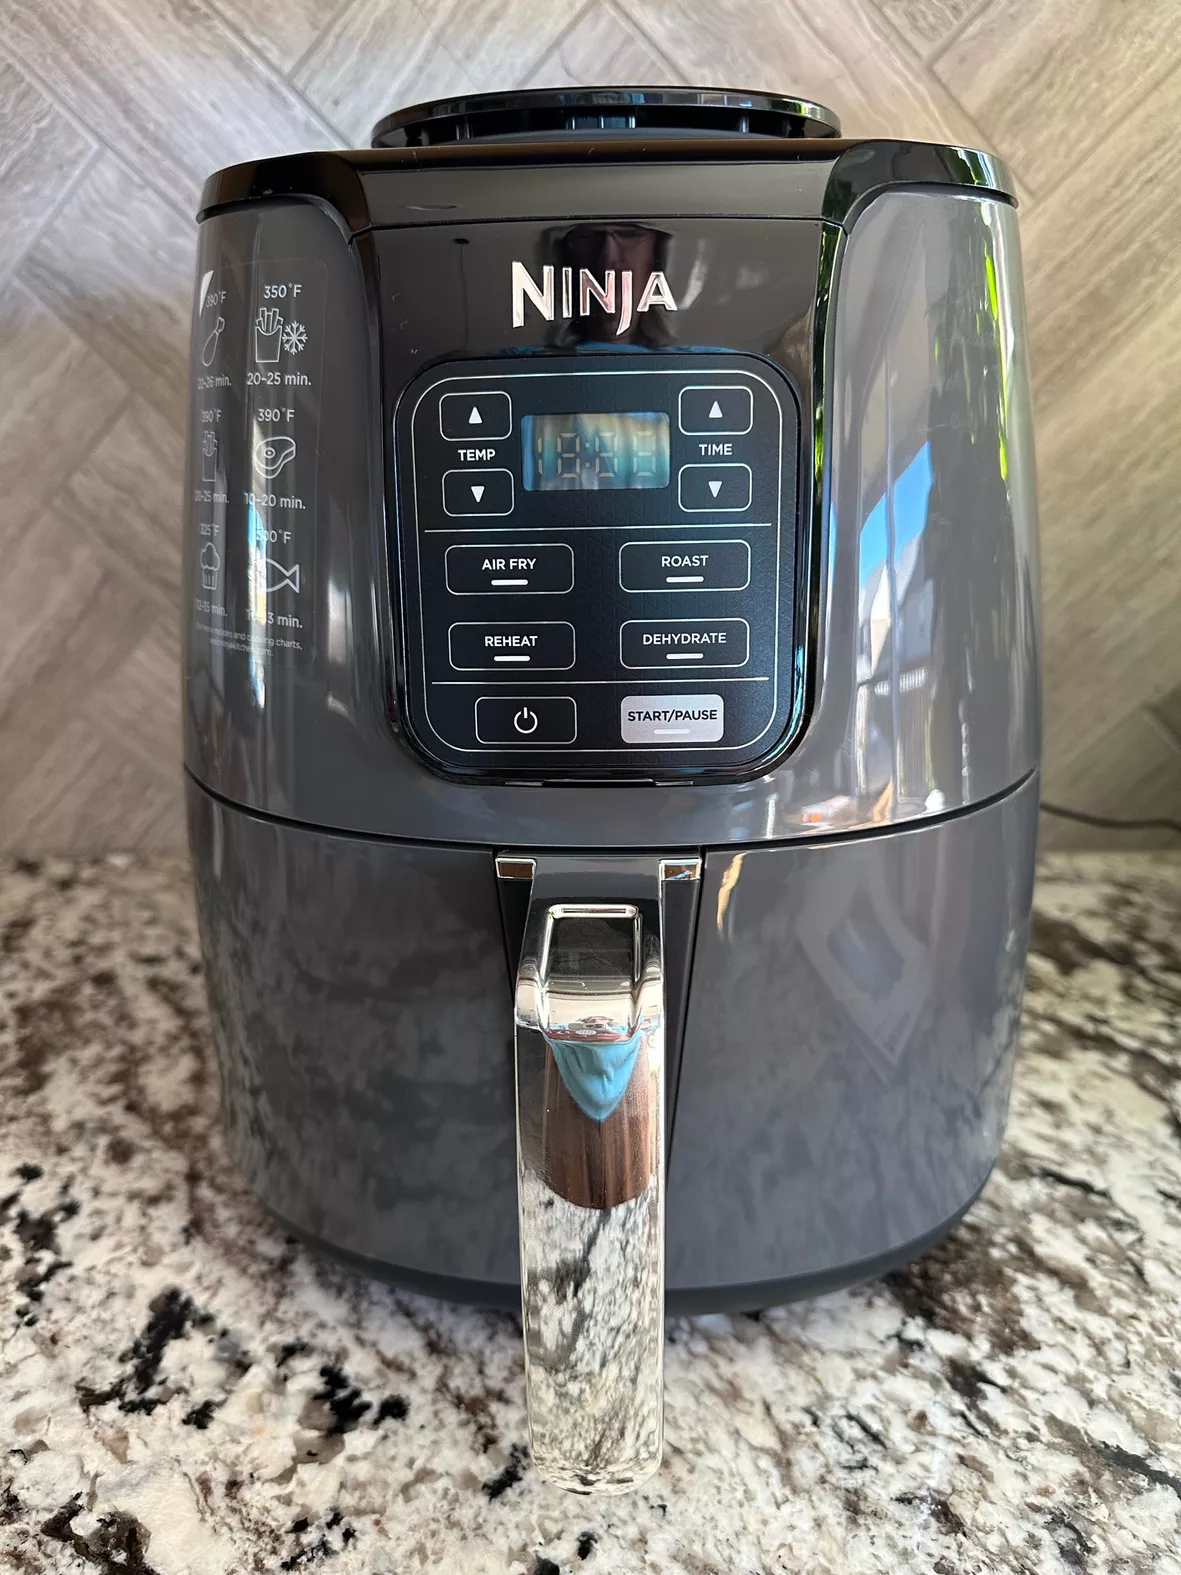 Ninja AF101 4QT Air Fryer That Crisps, Roasts, Reheats